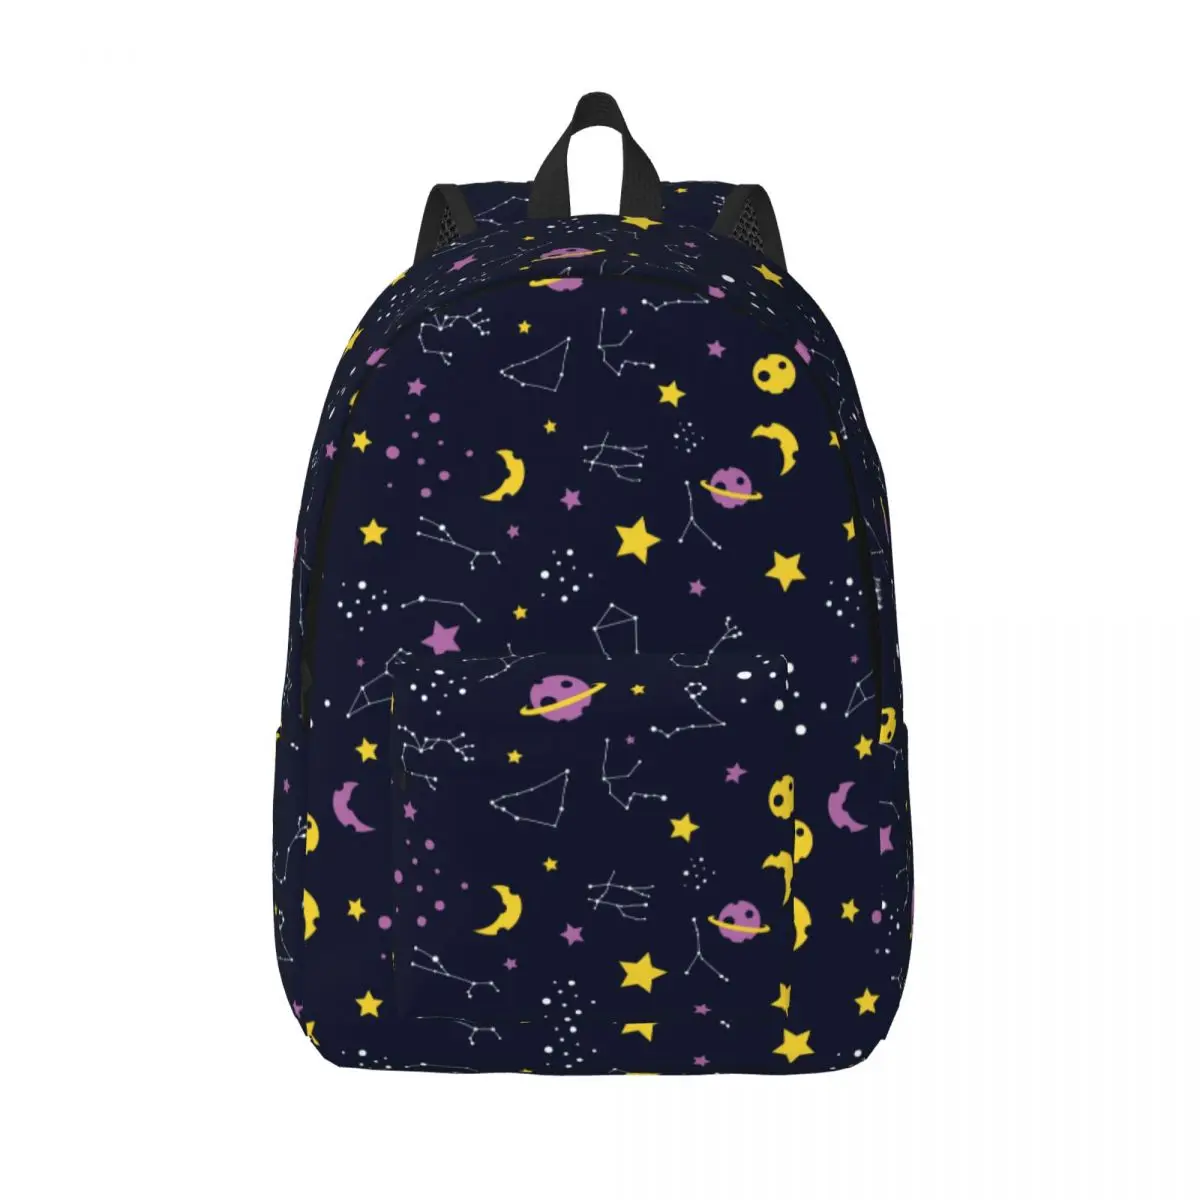 

Школьный ранец, студенческий рюкзак, рюкзак на плечо с красочным рисунком зодиака, сумка для ноутбука, школьный рюкзак